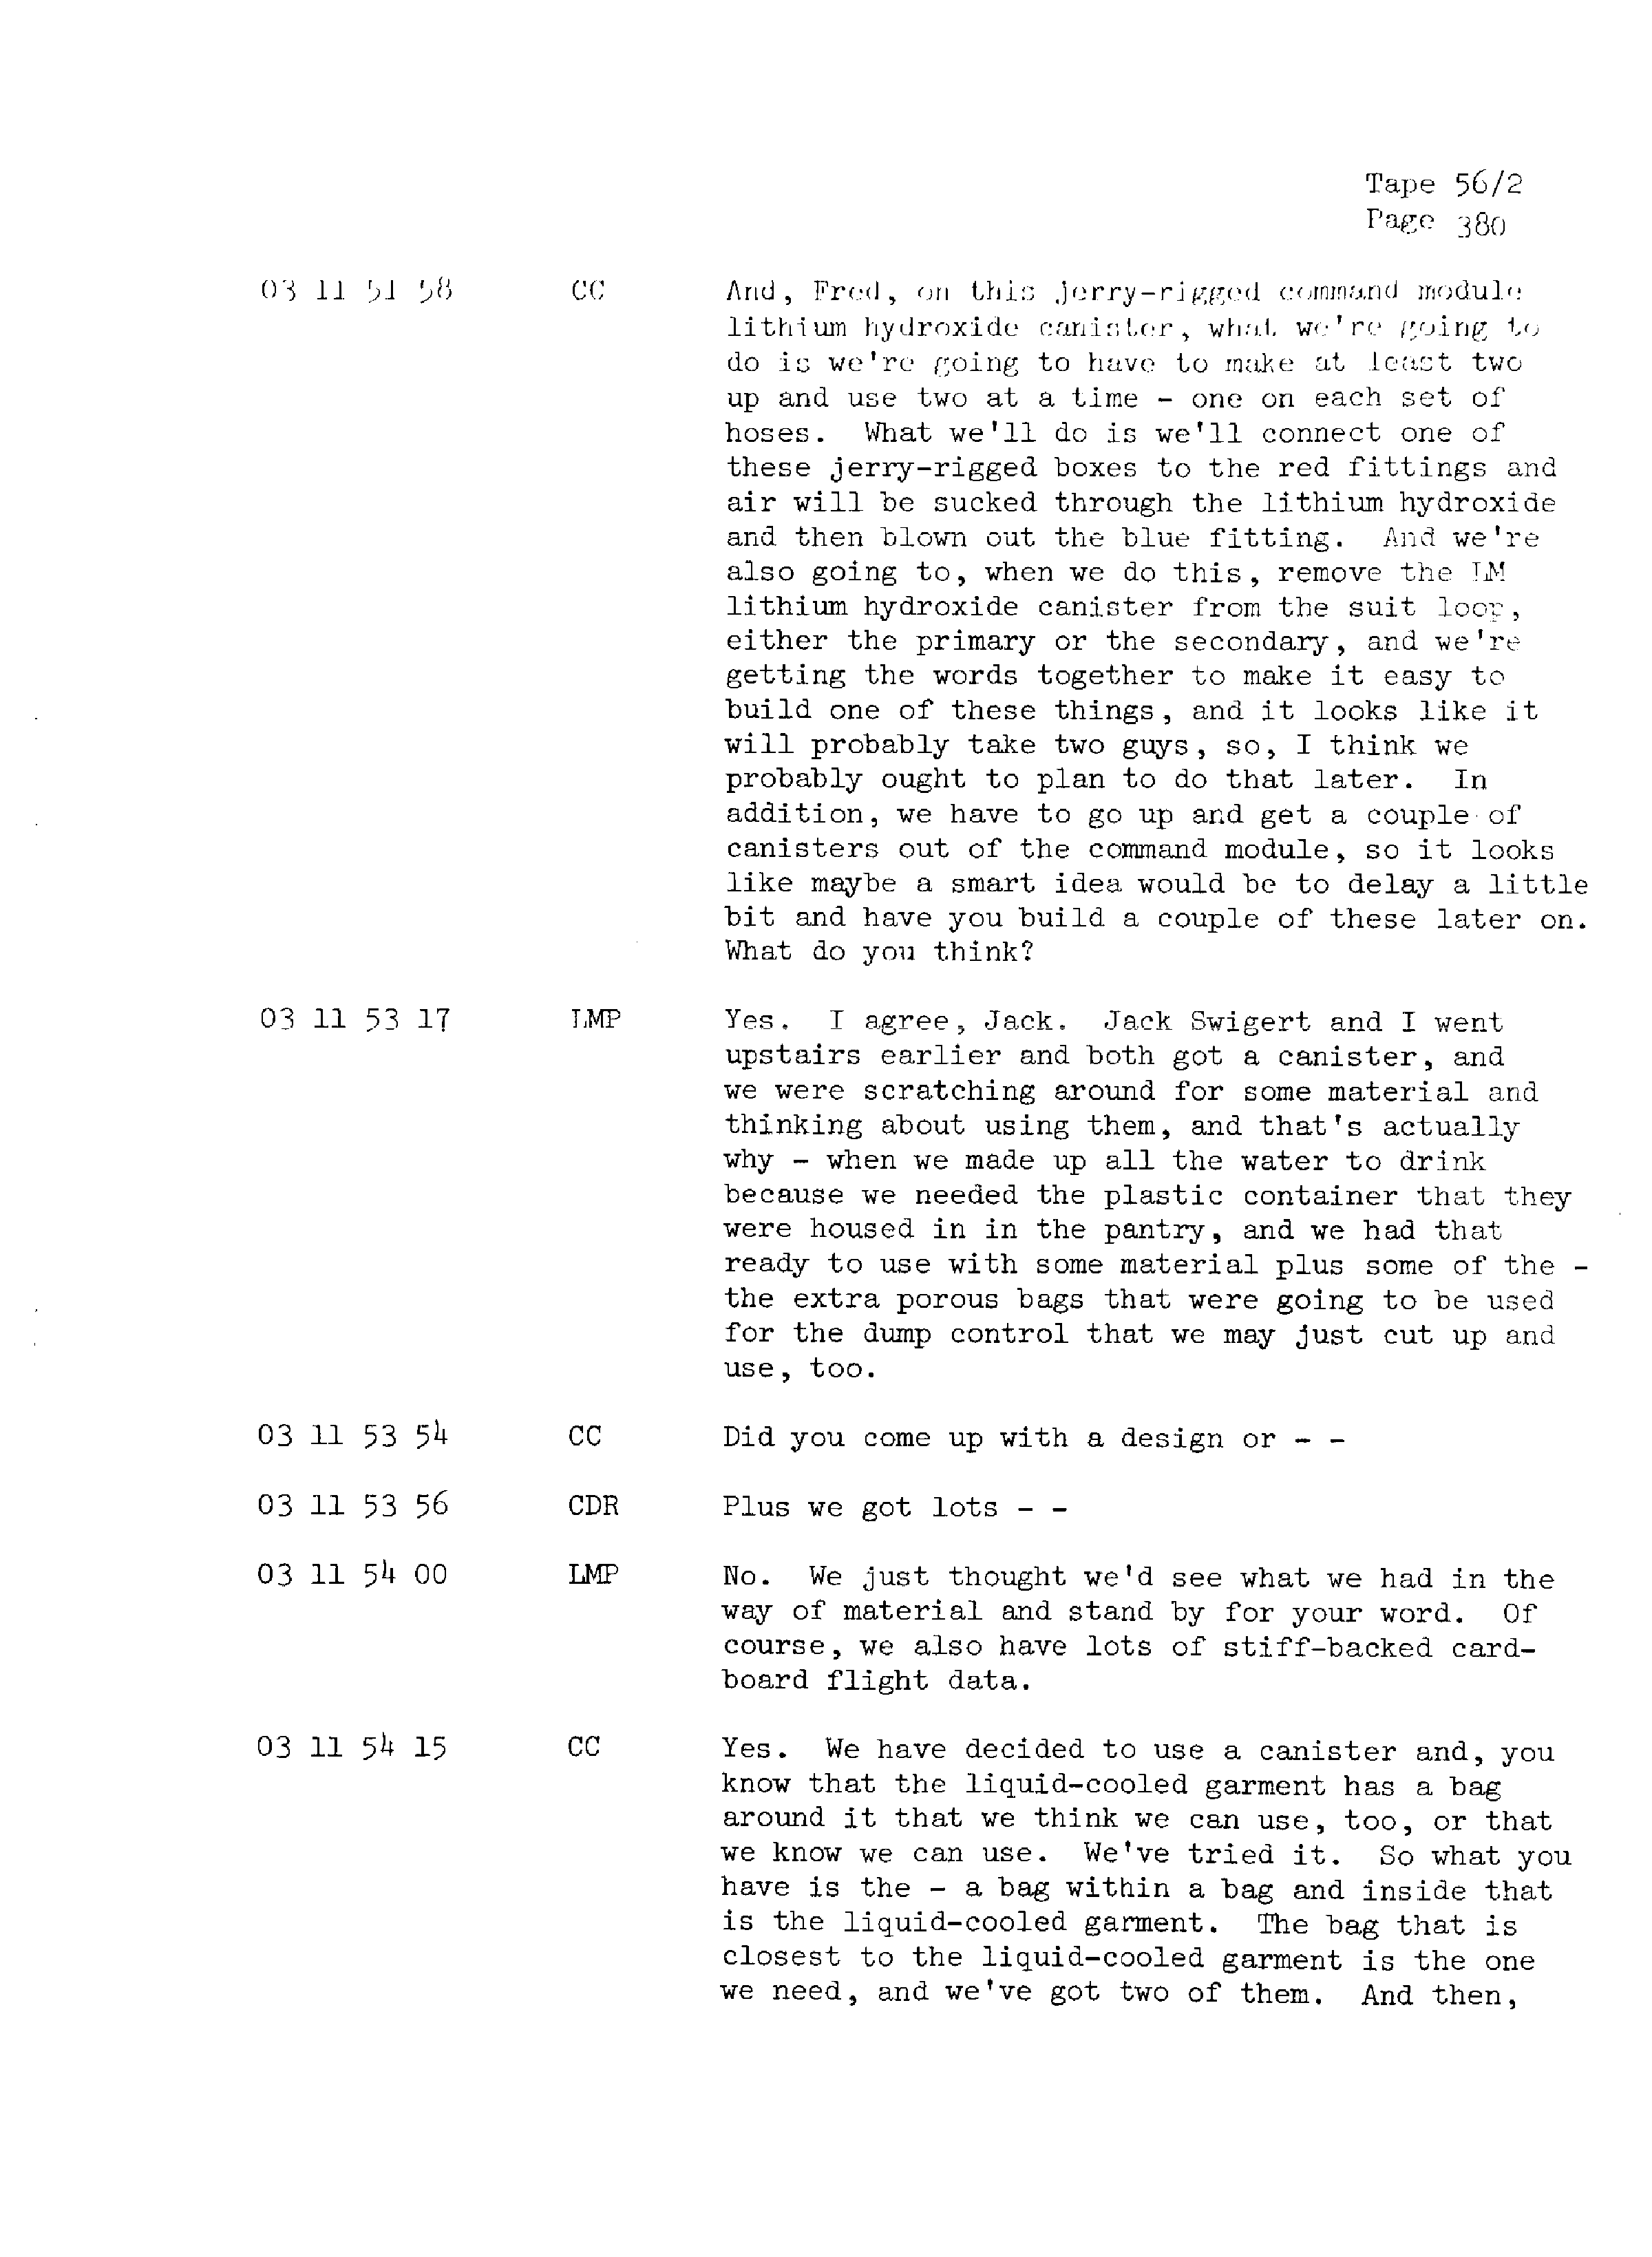 Page 387 of Apollo 13’s original transcript